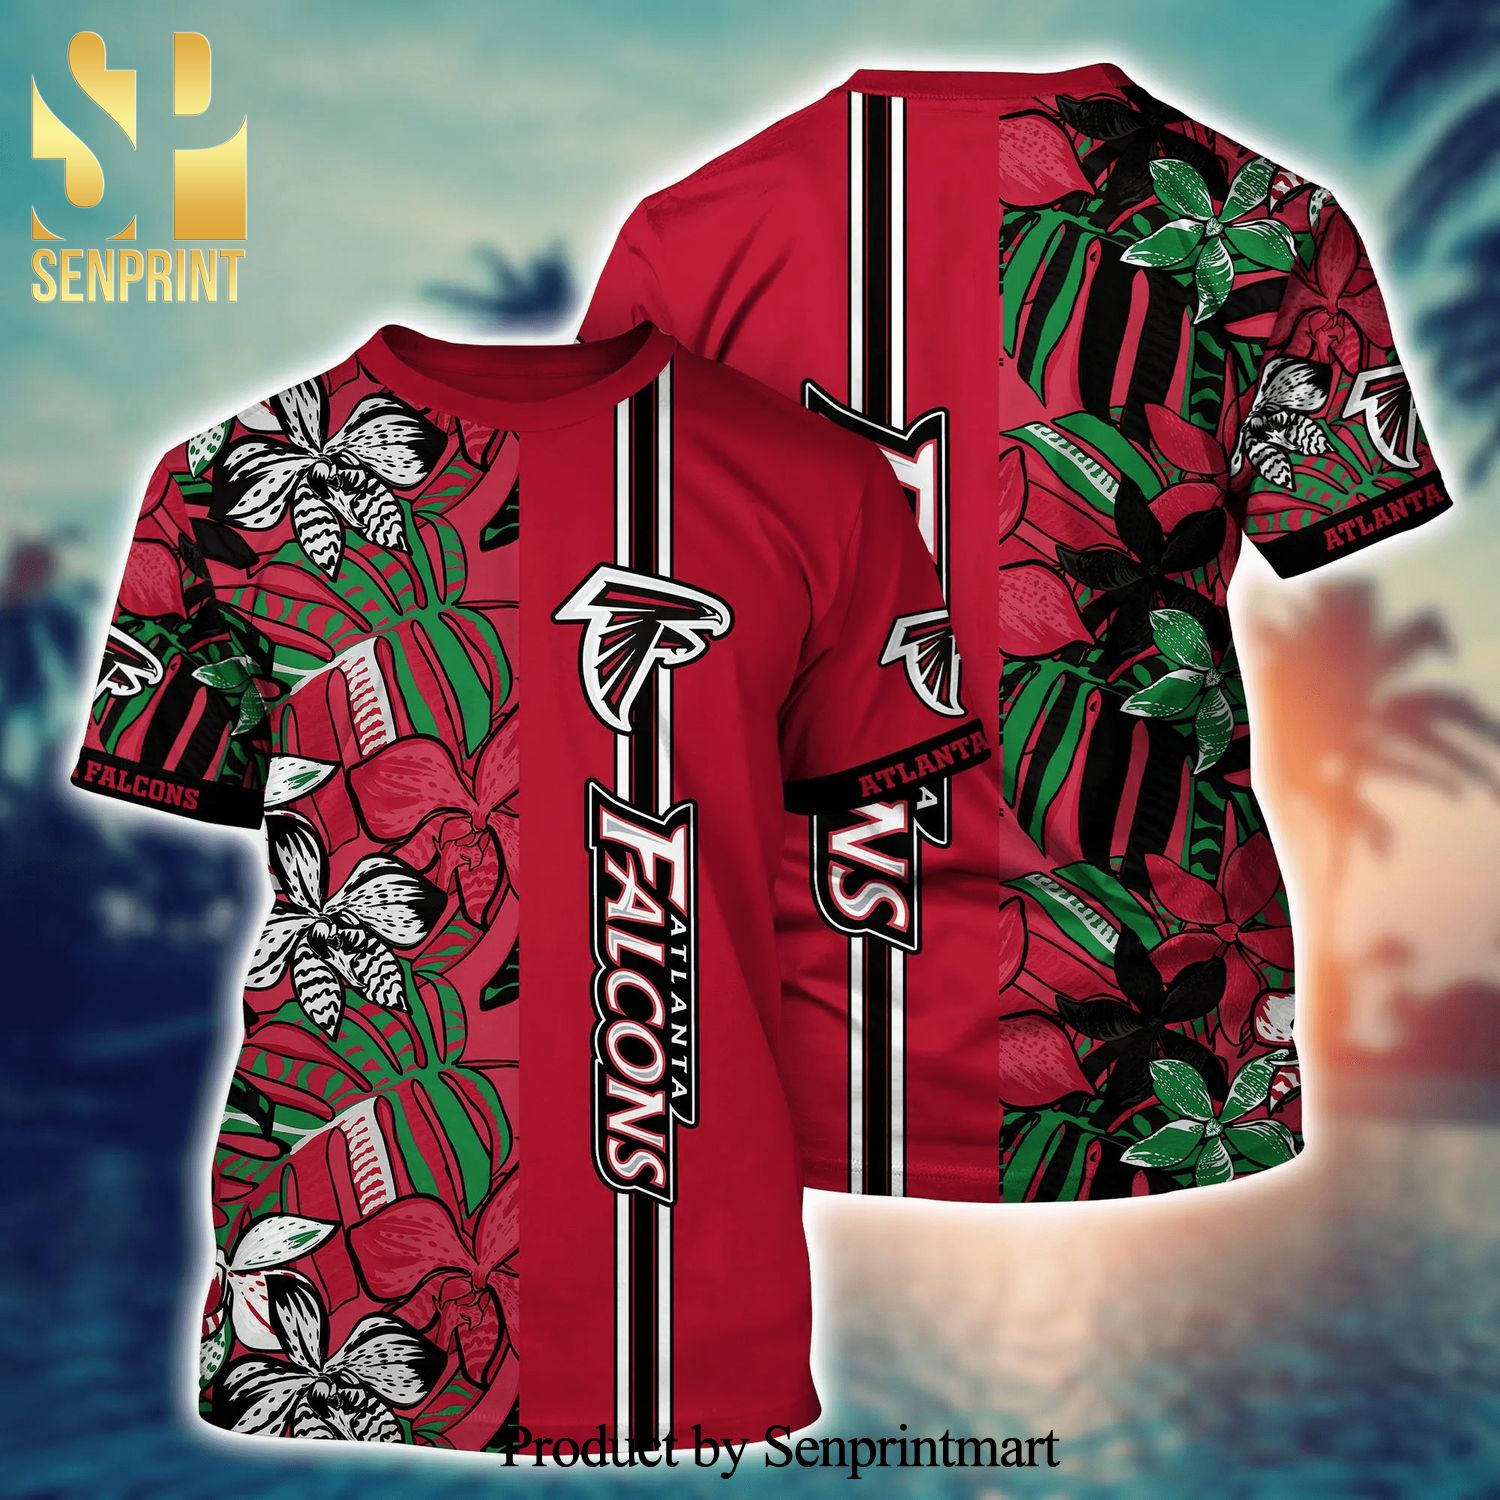 Atlanta Falcons NFL Beach Shirt For Sports Best Fans This Summer NFL  Hawaiian Shirt